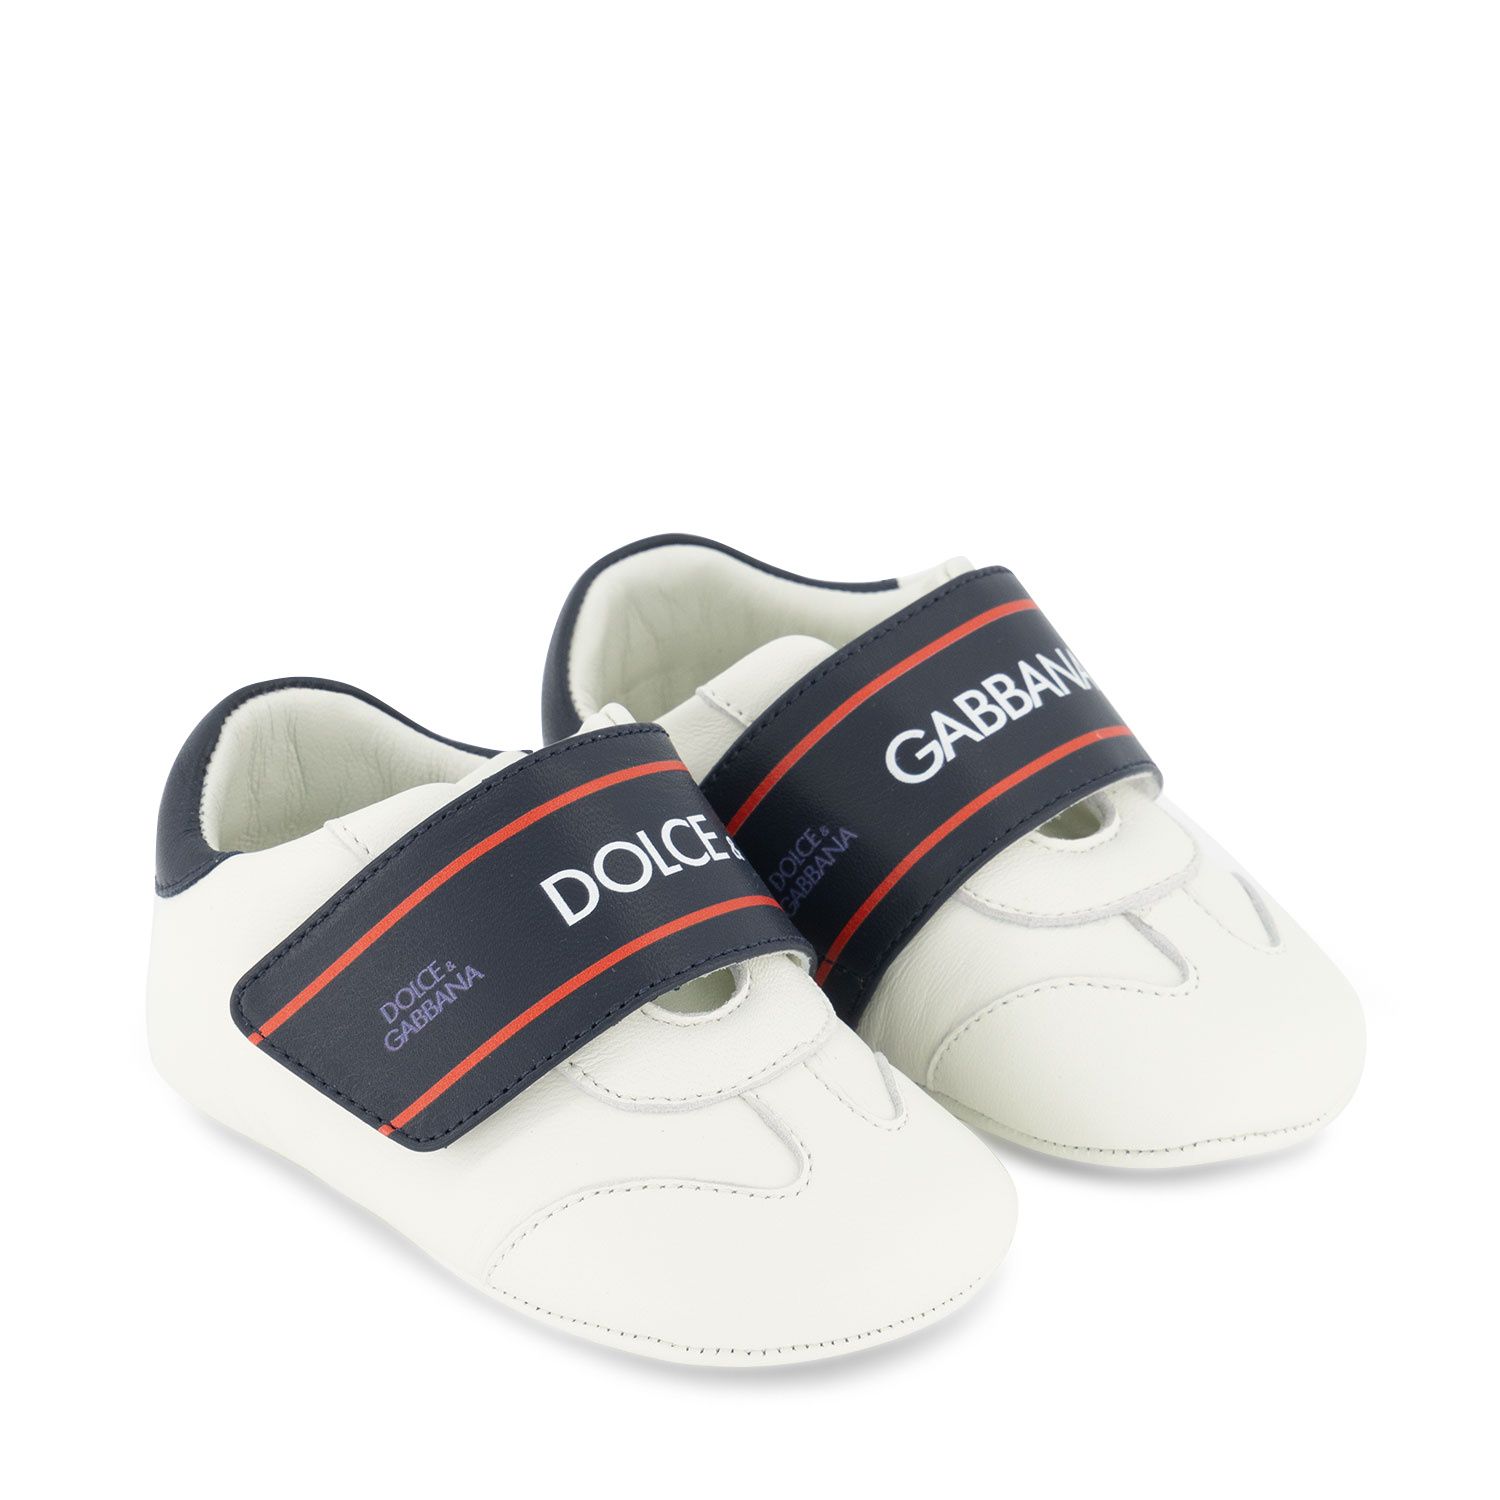 Afbeelding van Dolce & Gabbana DK0132 AO886 babyschoenen wit